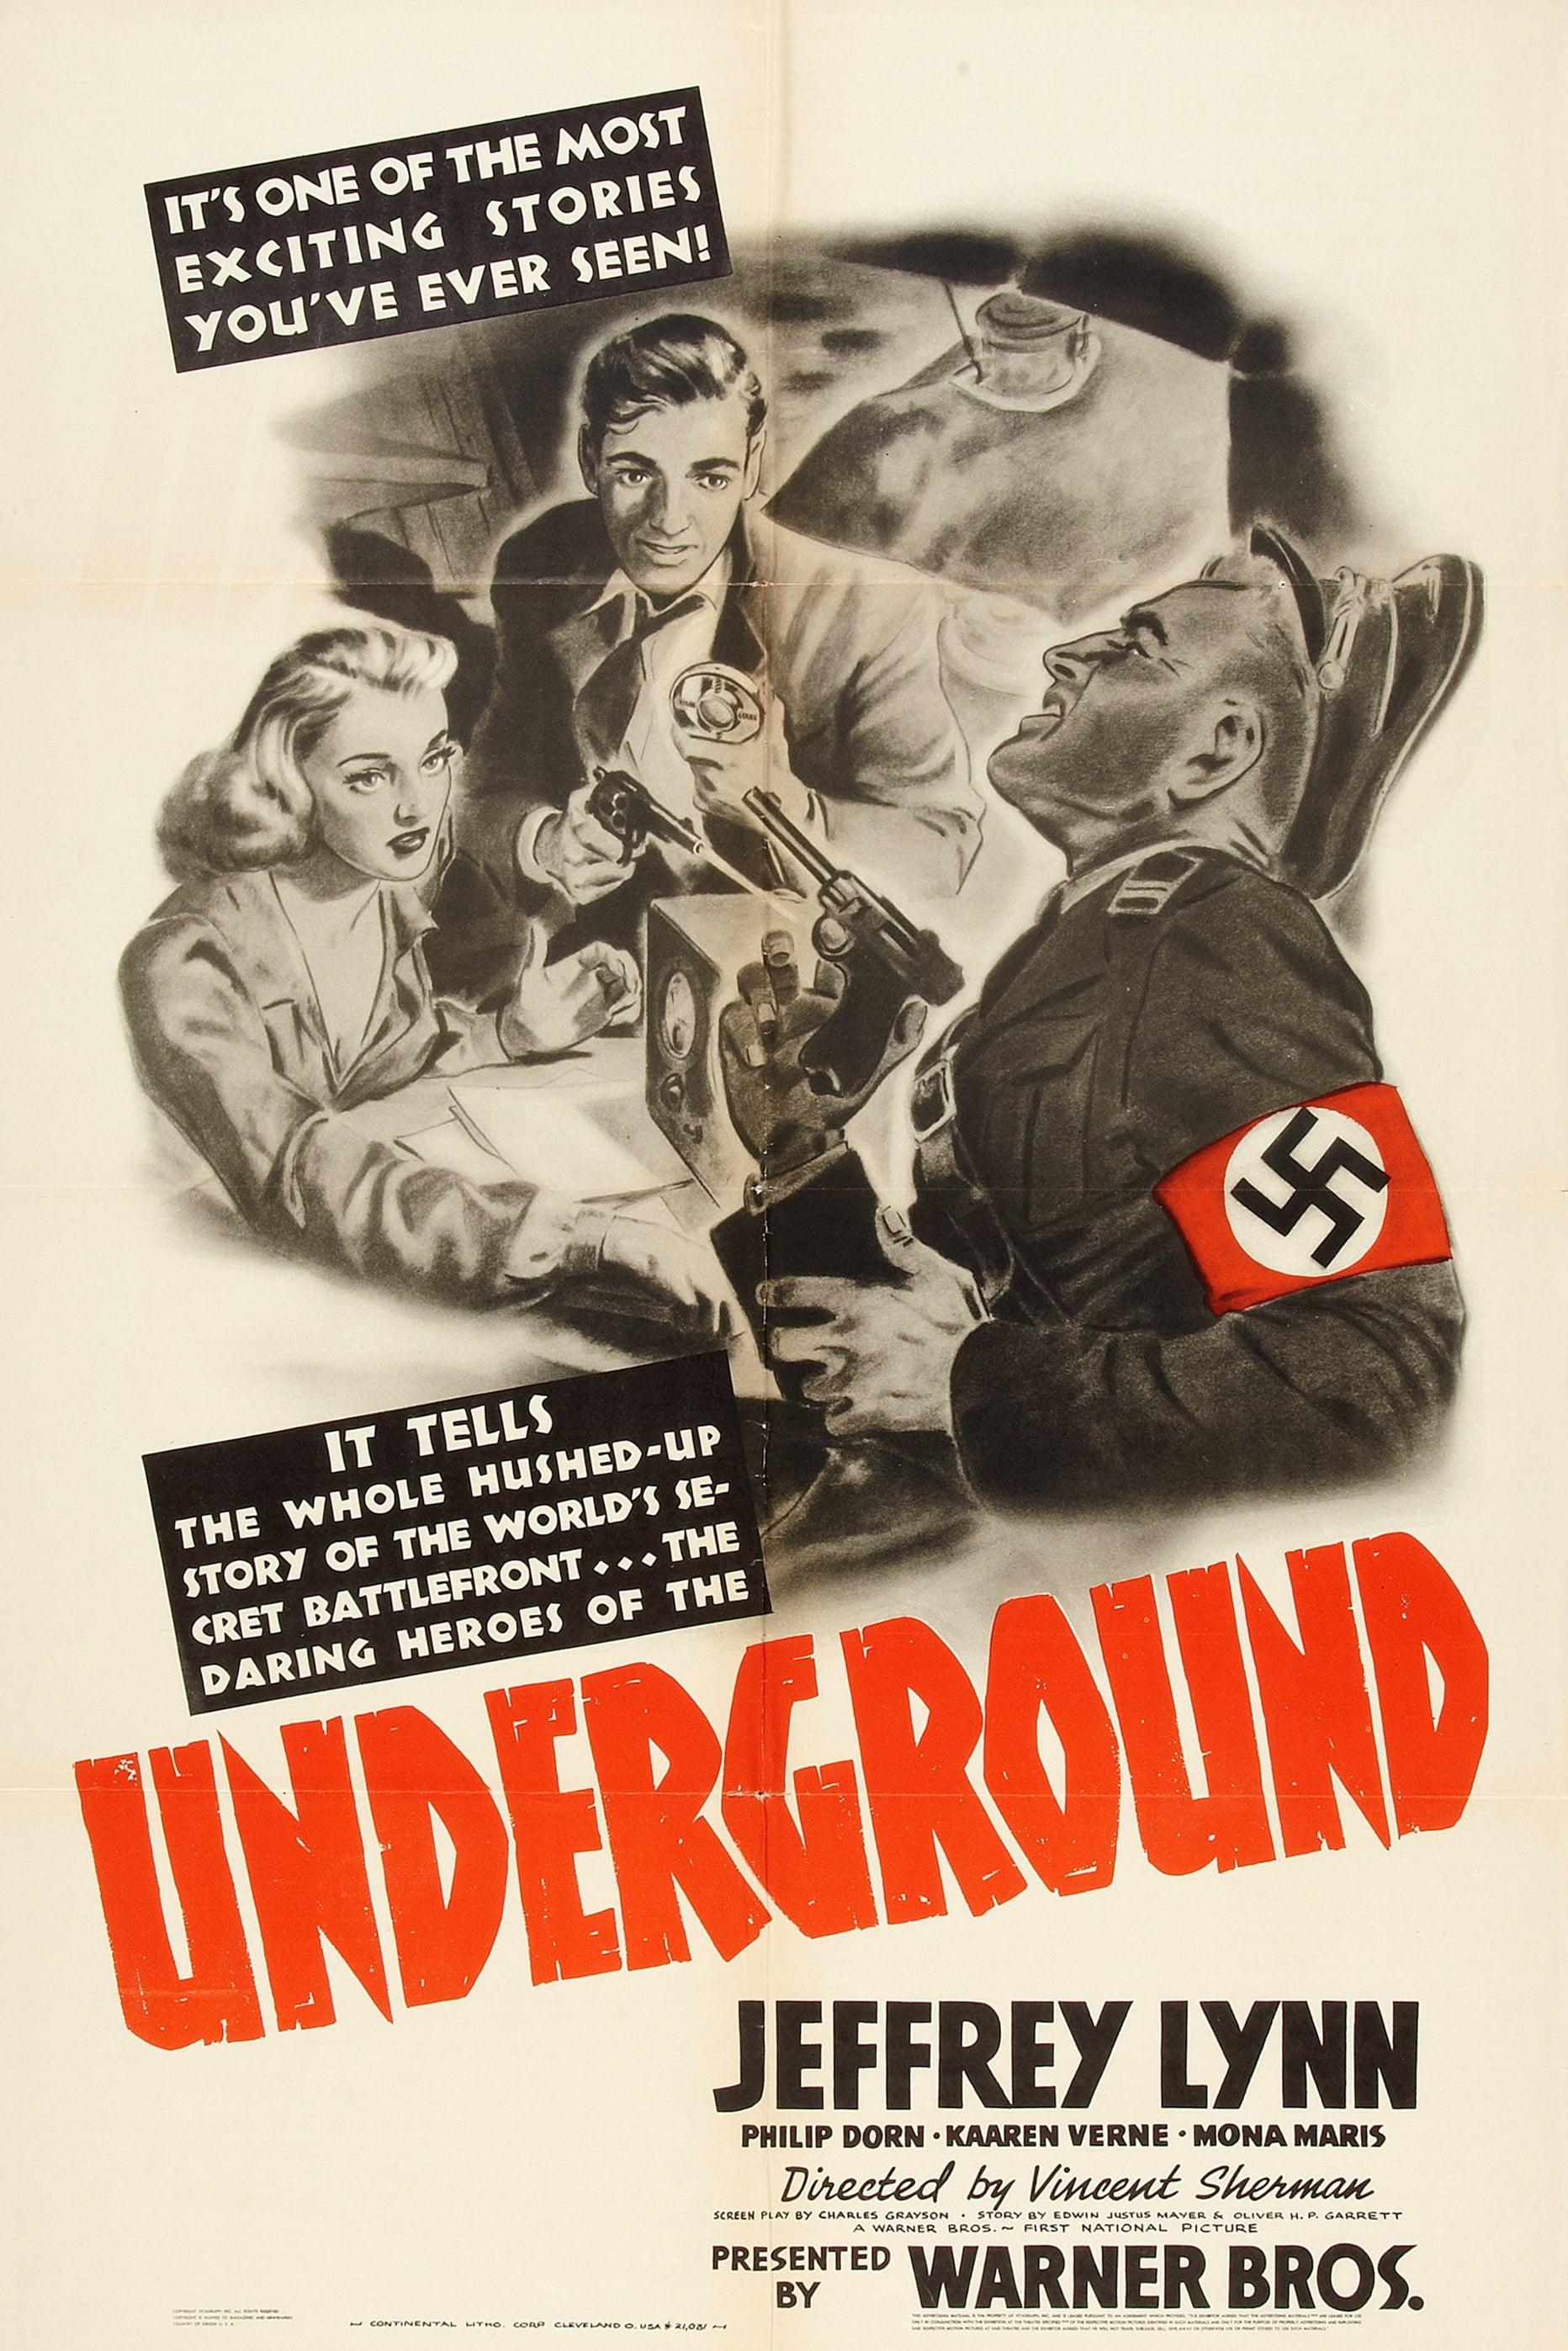 Underground poster